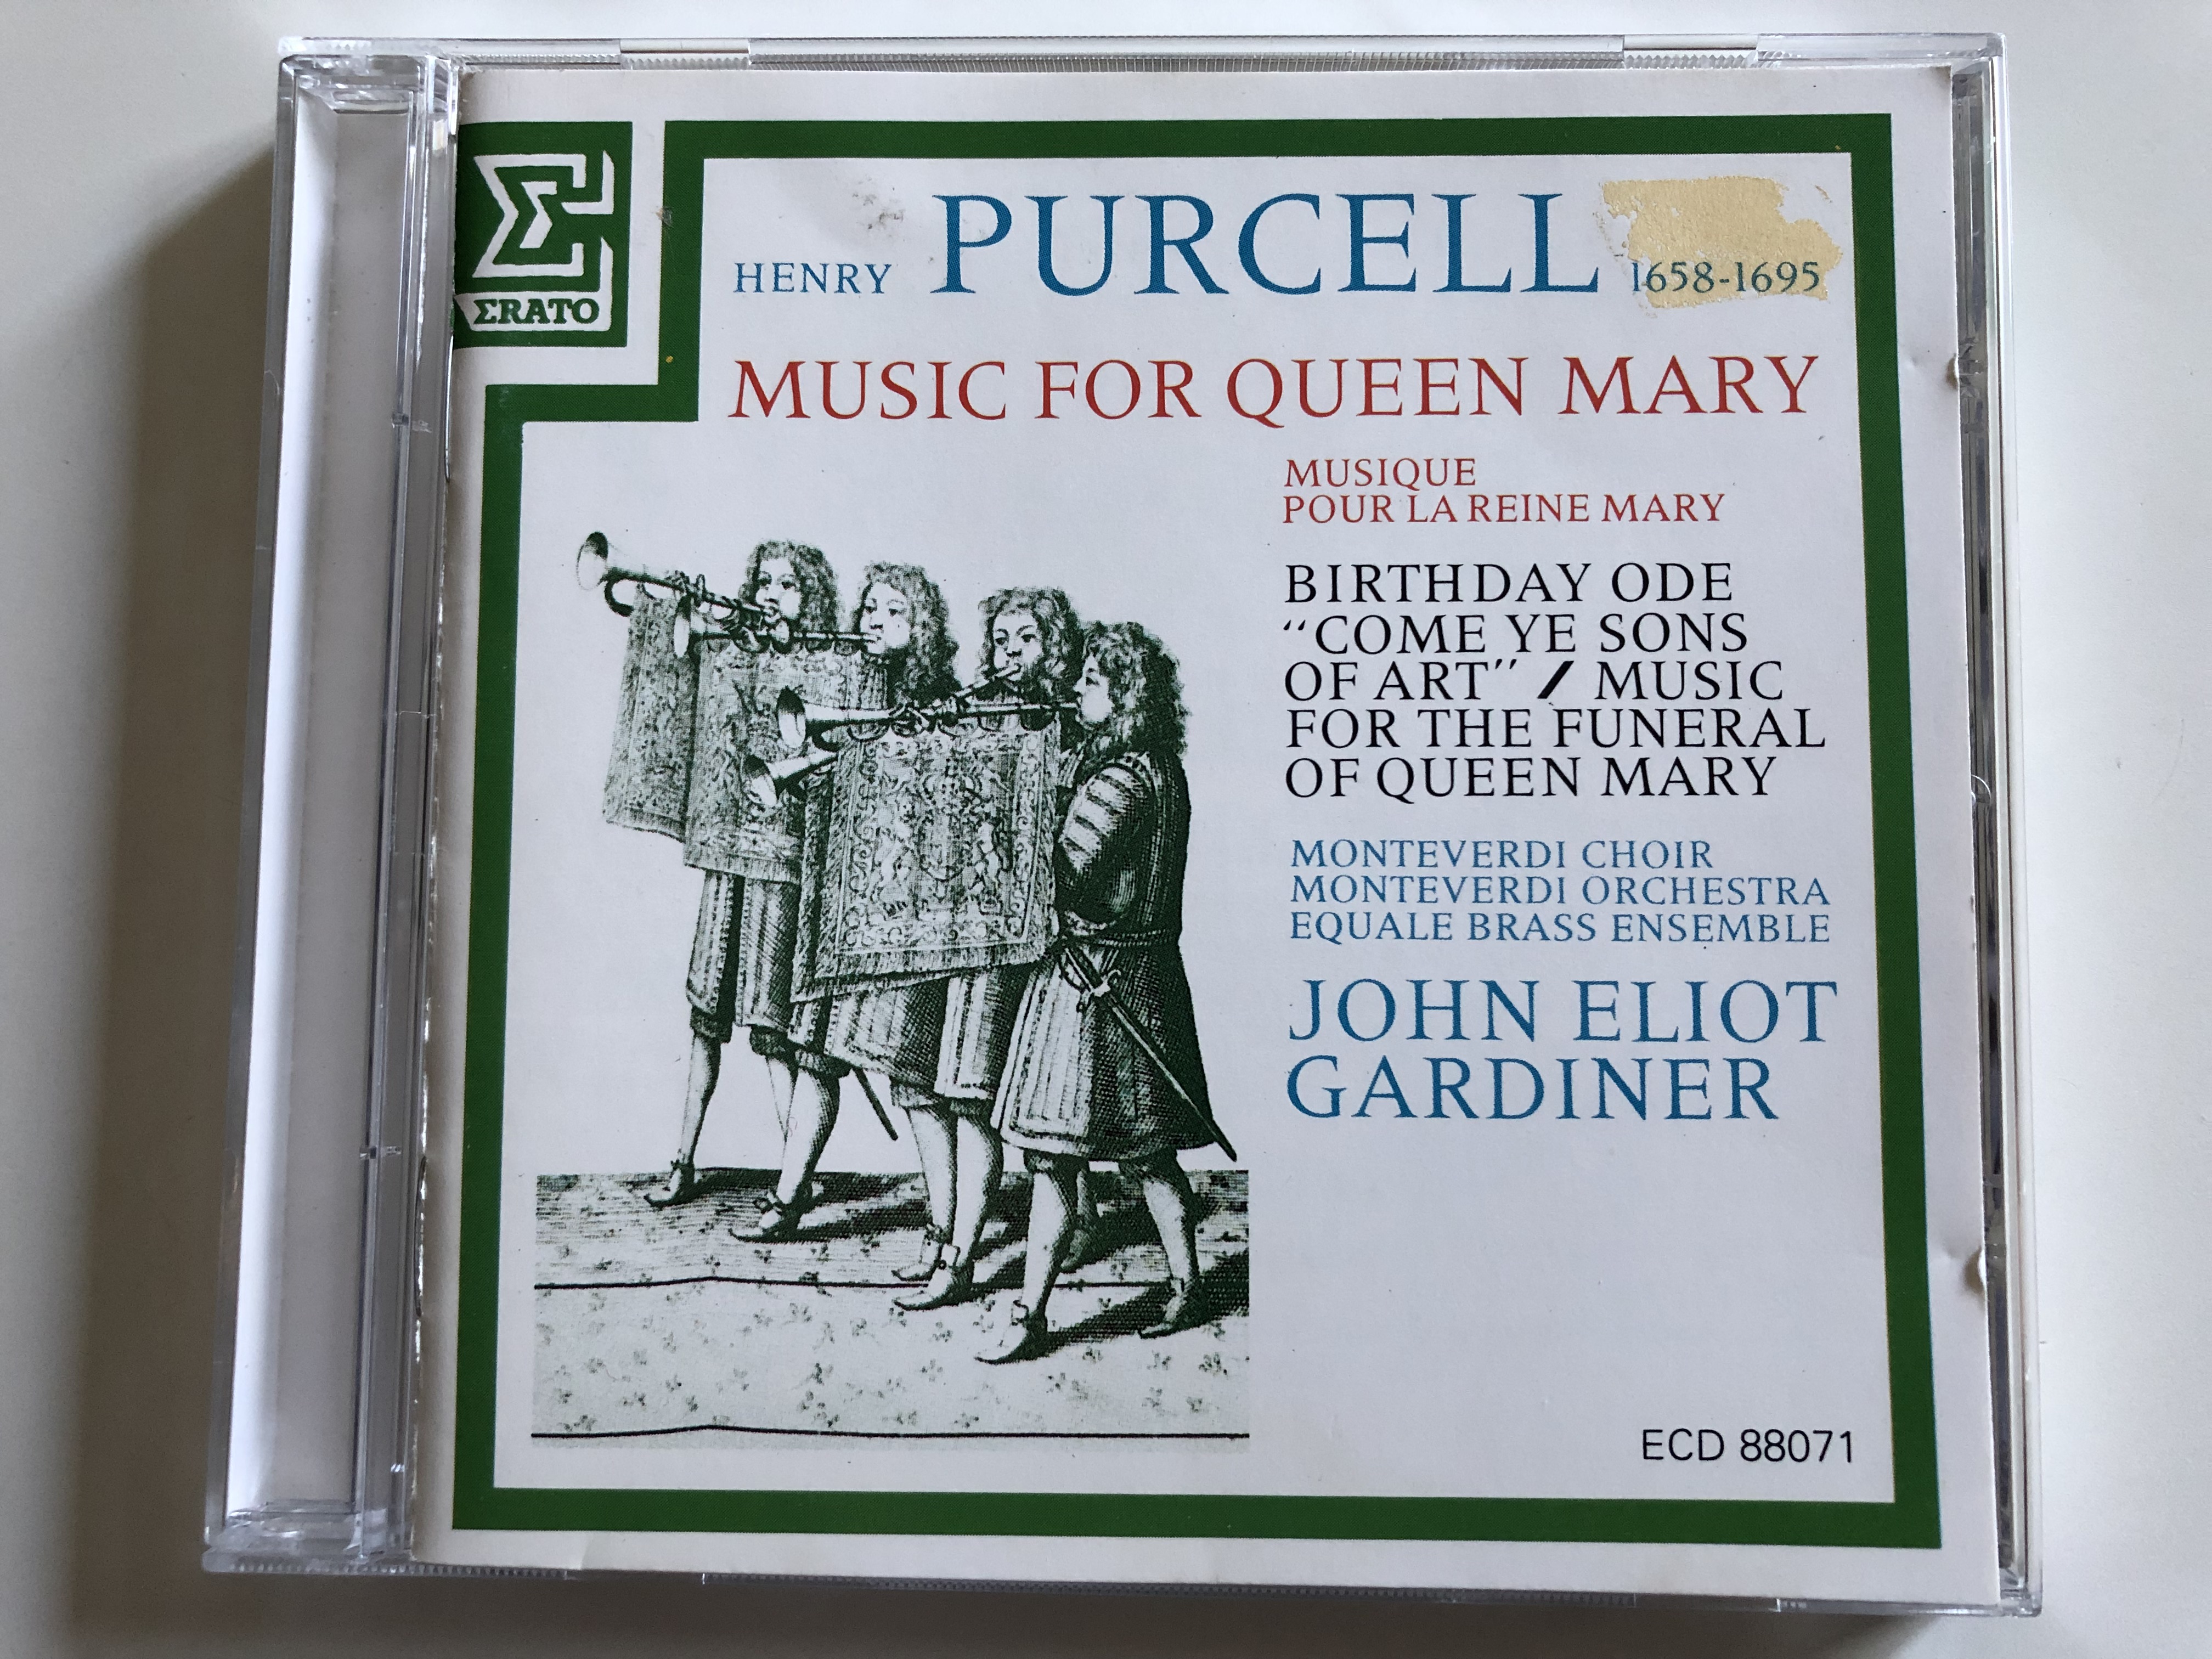 henry-purcell-music-for-queen-mary-monteverdi-choir-monteverdi-orchestra-equale-brass-ensemble-john-eliot-gardiner-erato-audio-cd-ecd-88071-2-.jpg